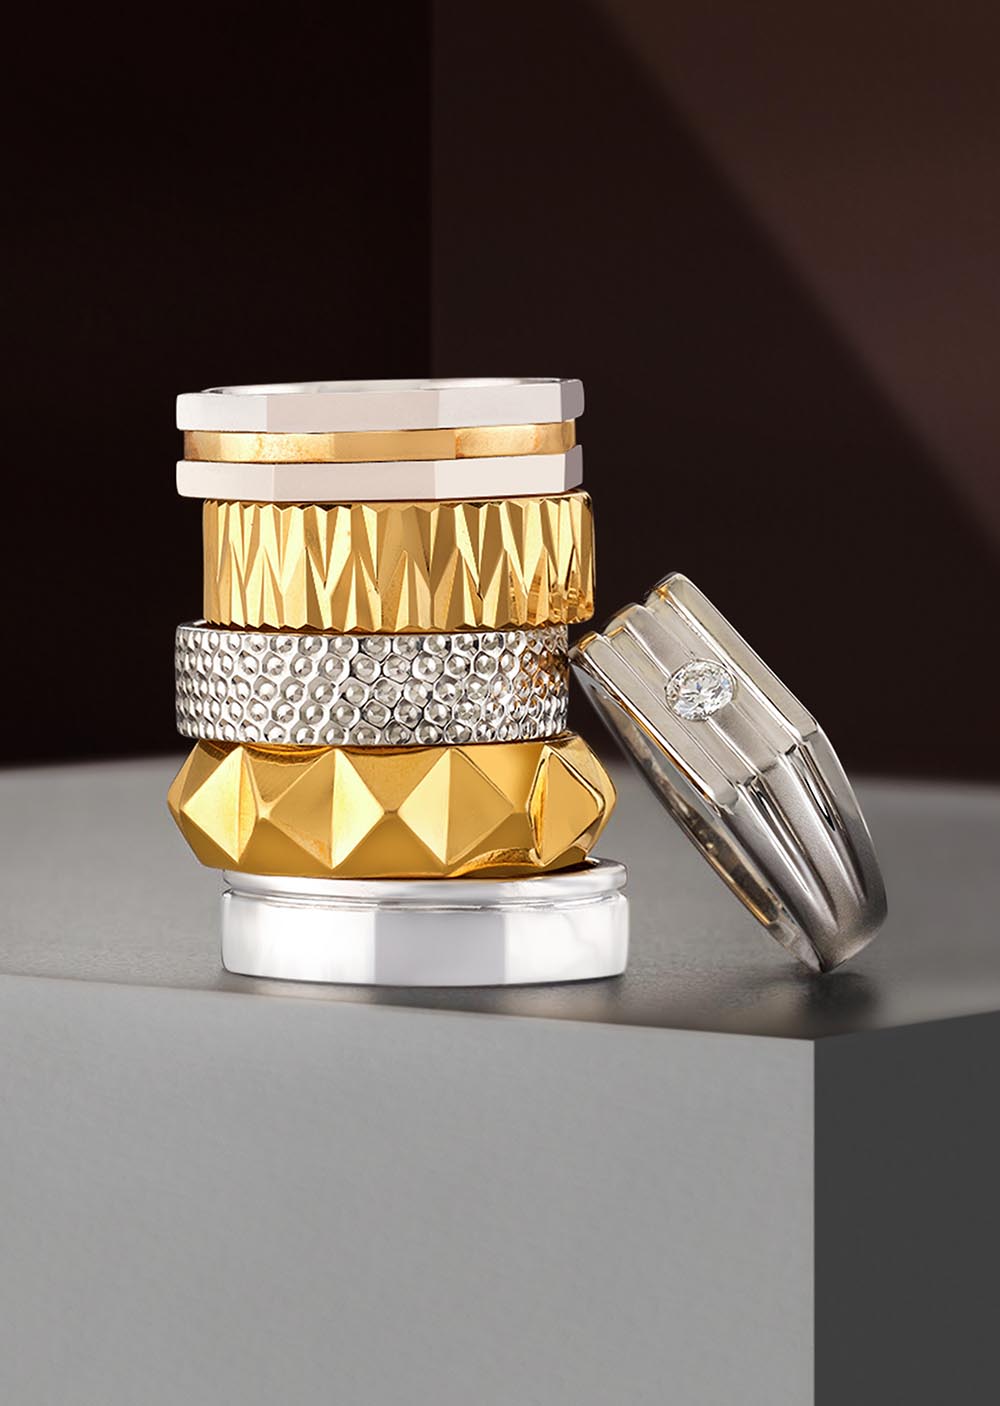 Buy Bhima Jewellers 22k Gold Bracelet for Men 12.21gm at Amazon.in